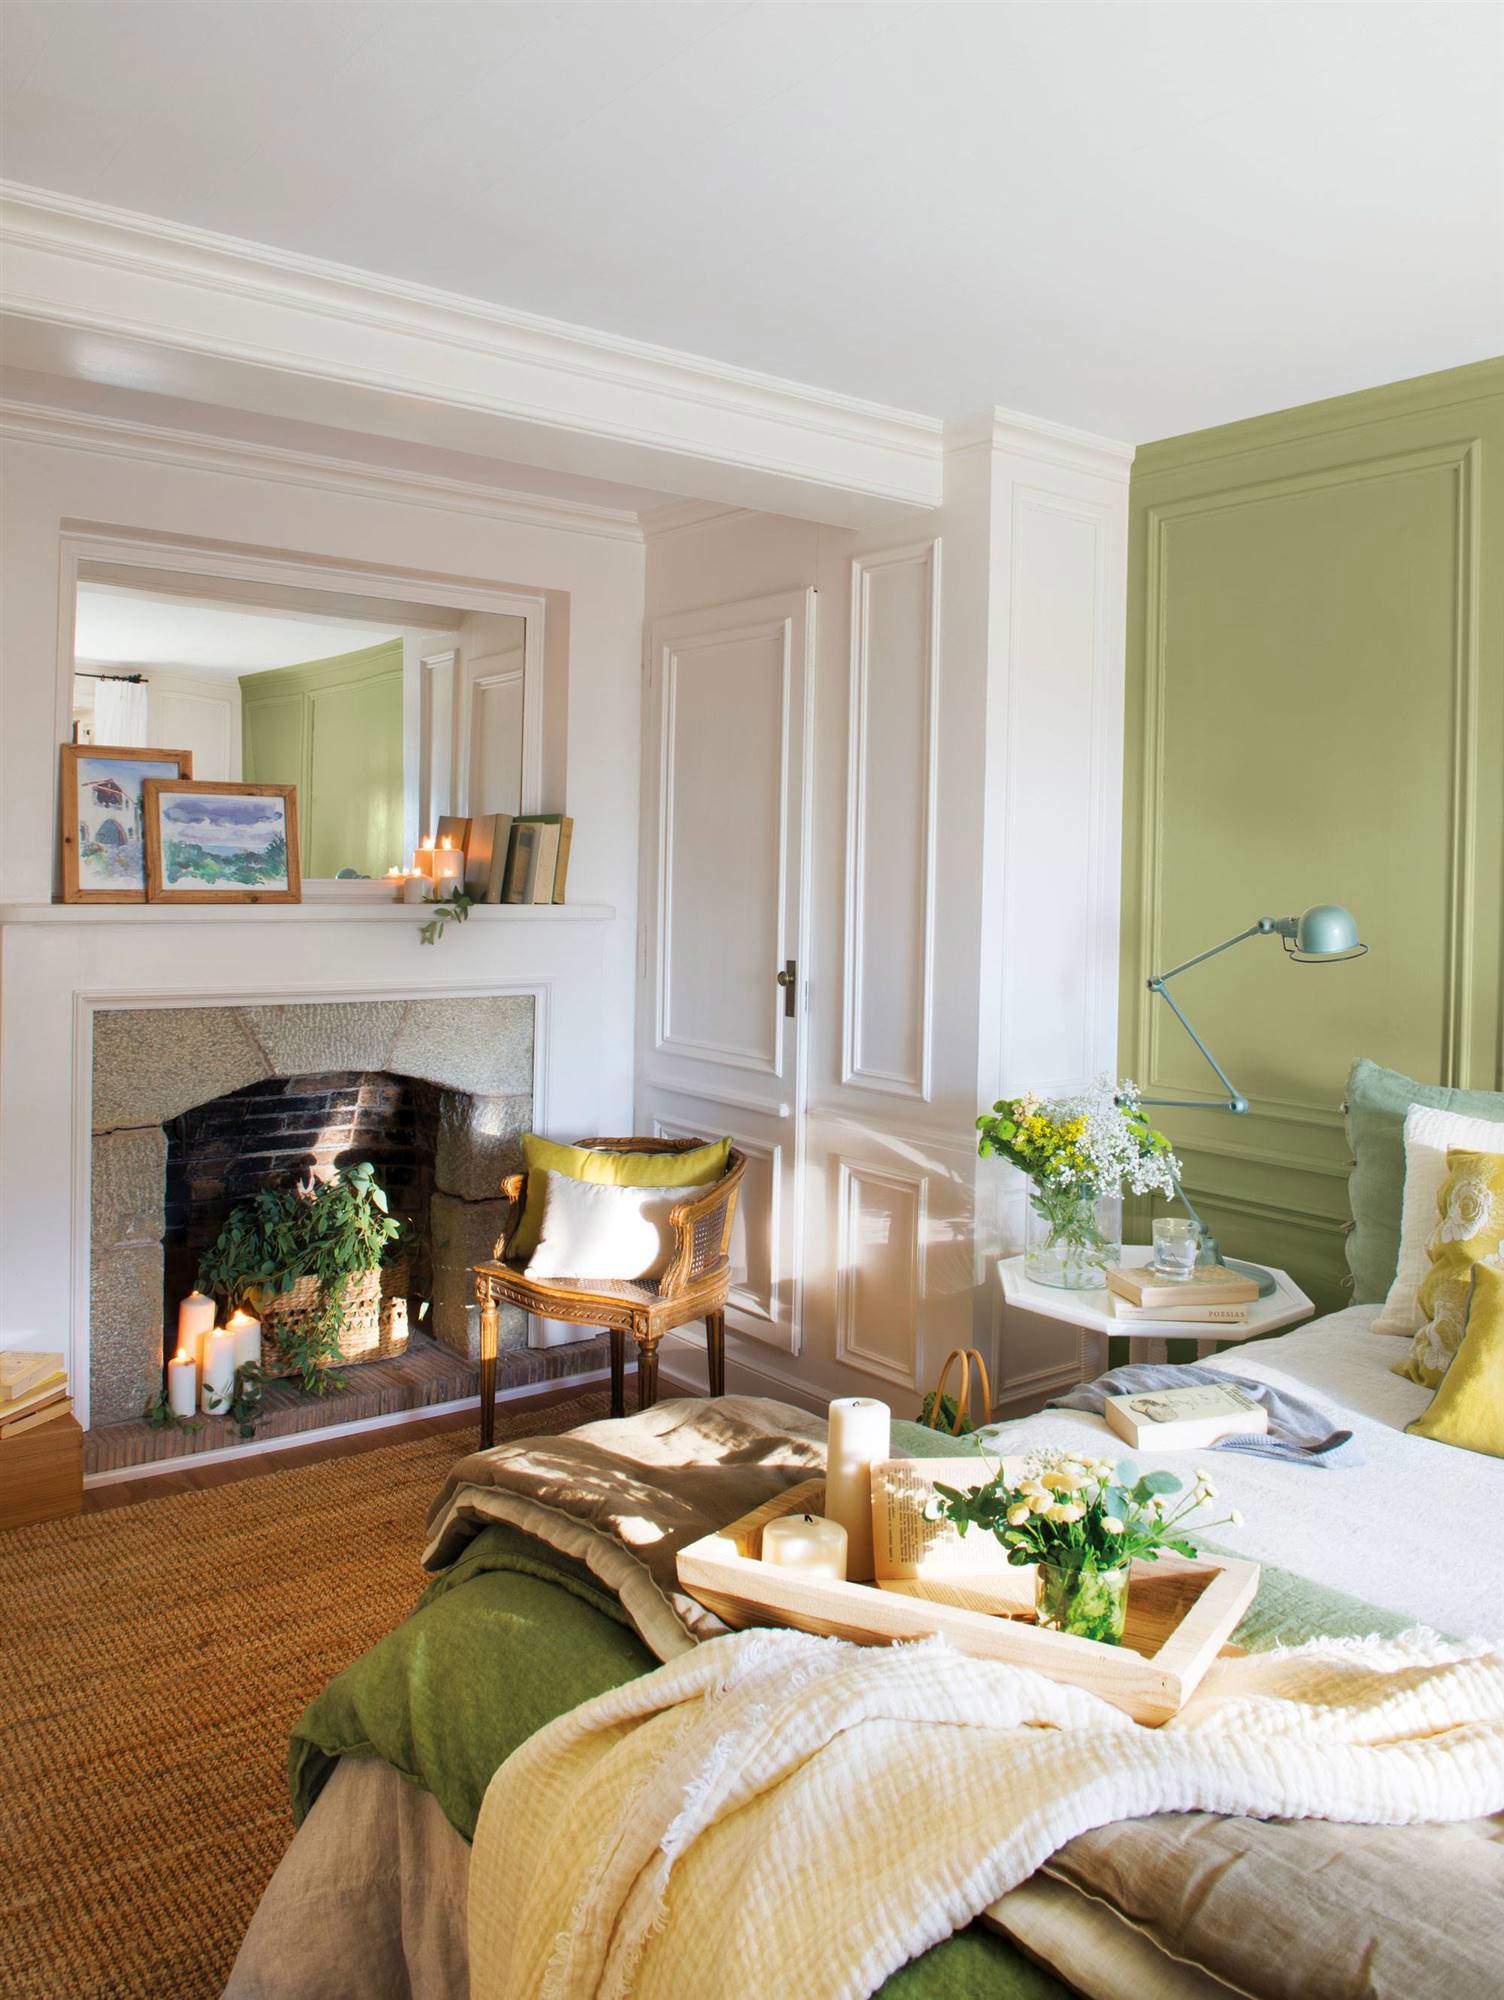 Dormitorio decorado en verde y blanco con molduras y chimenea.